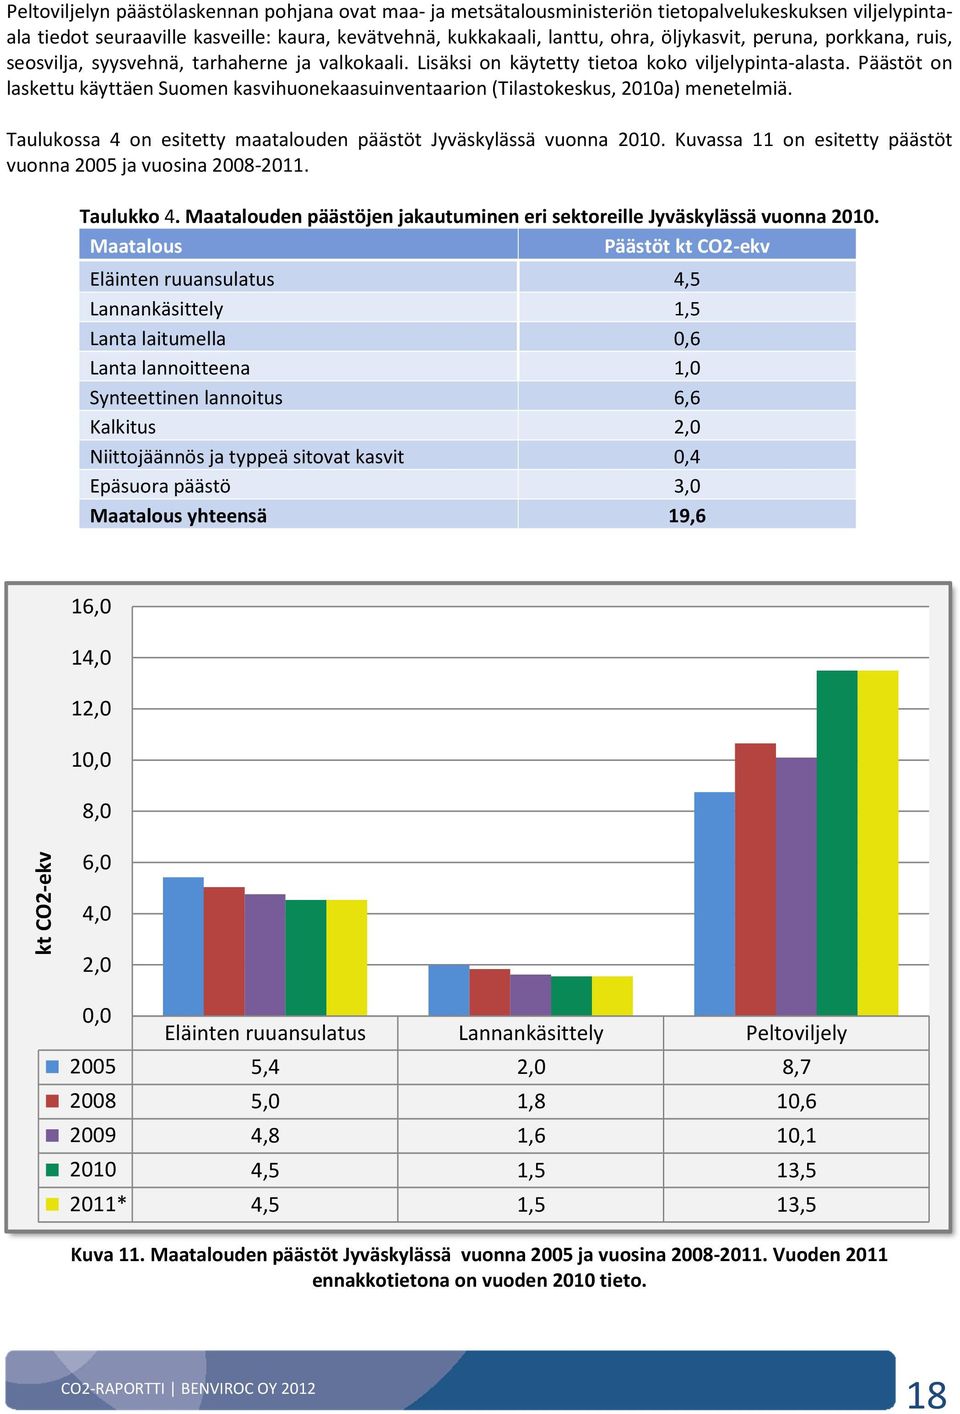 Päästöt on laskettu käyttäen Suomen kasvihuonekaasuinventaarion (Tilastokeskus, 2010a) menetelmiä. Taulukossa 4 on esitetty maatalouden päästöt Jyväskylässä vuonna 2010.